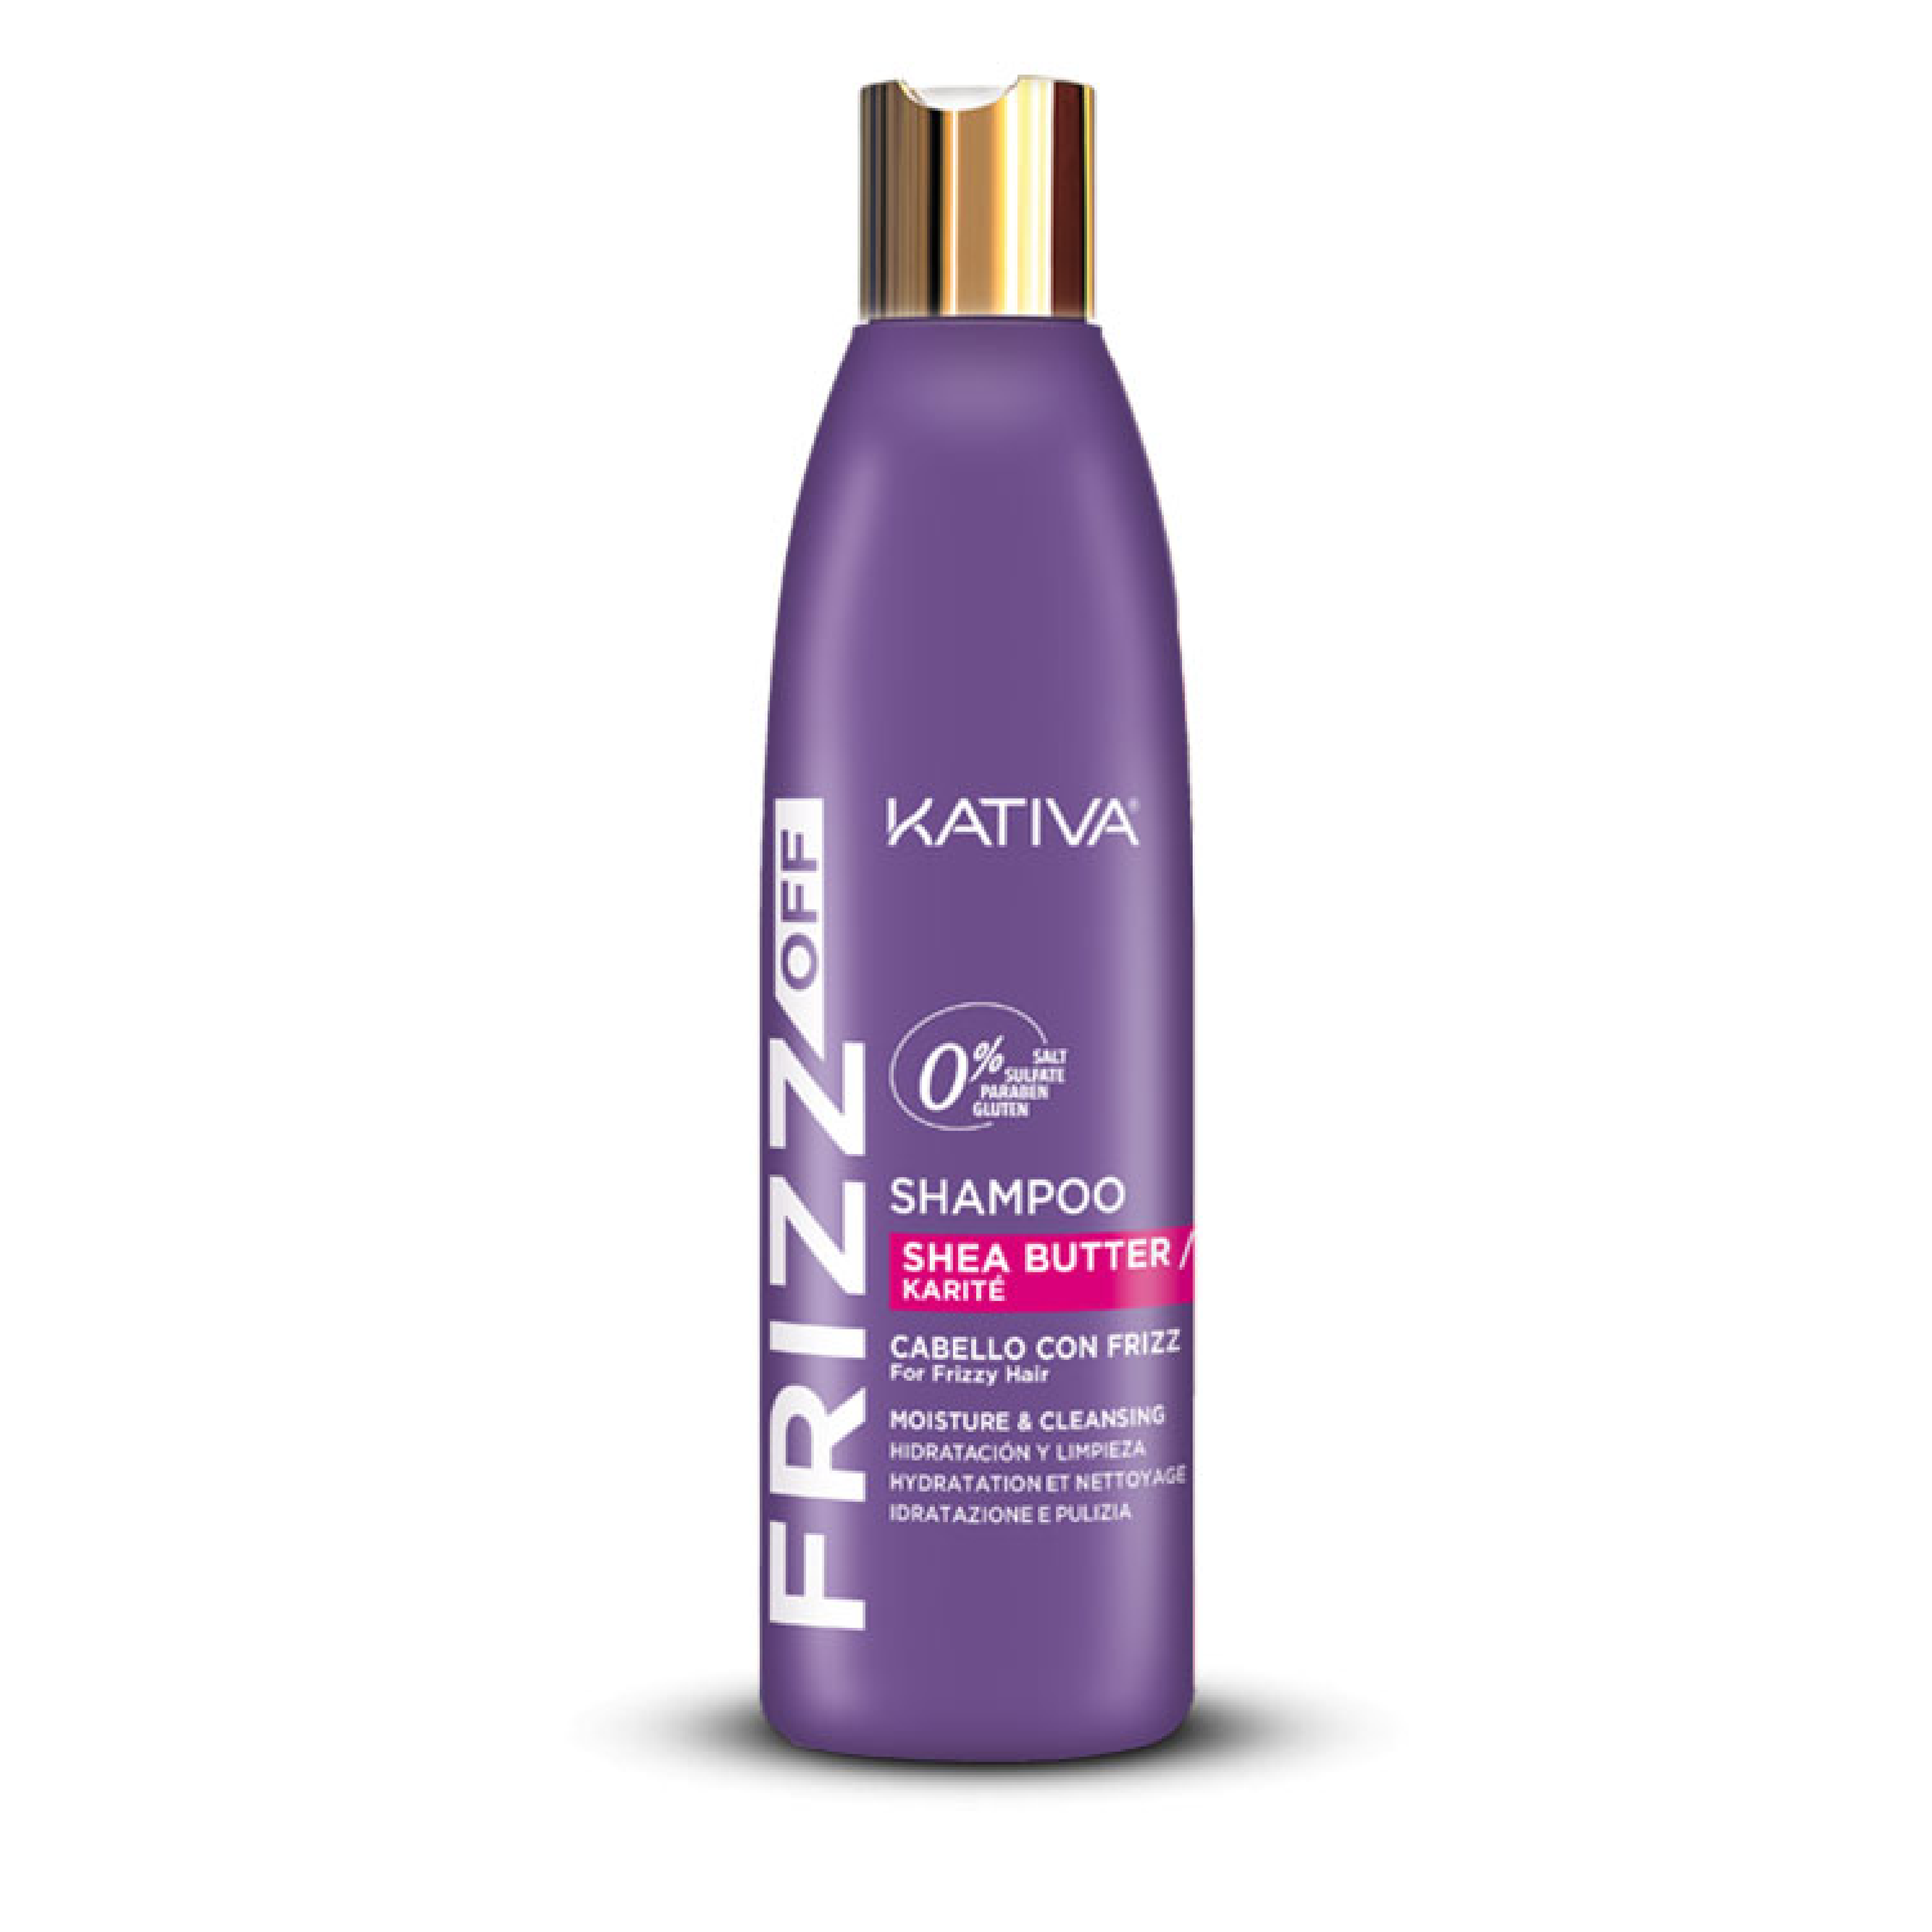 Kativa Shampoo adiós al Friz de 250 ml